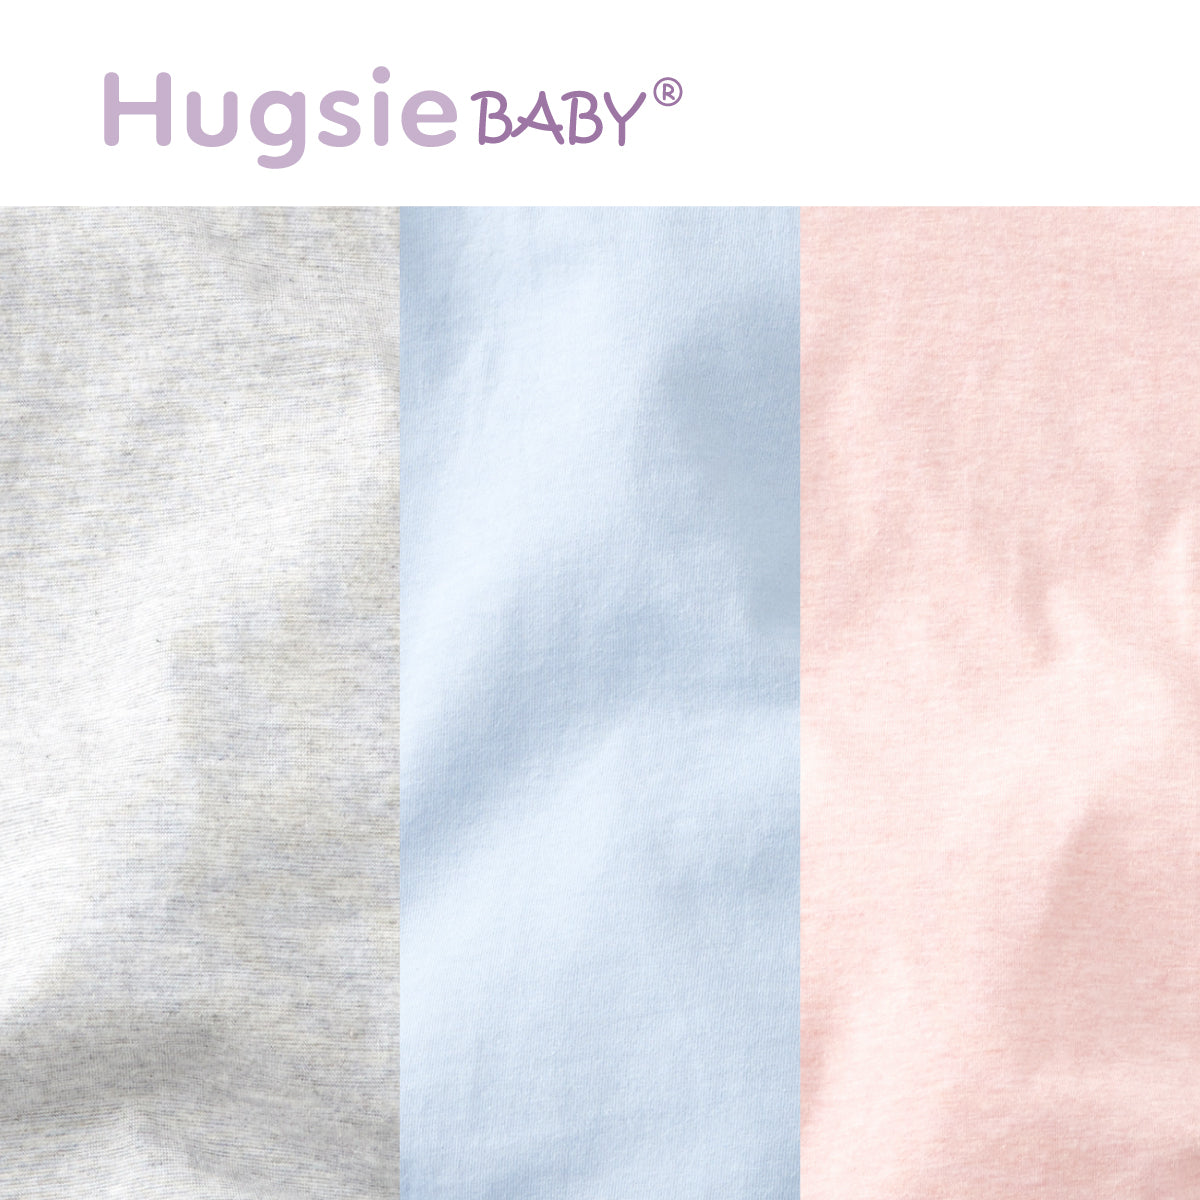 HugsieBABY靜音袋鼠包巾(適用於0-4個月)/HugsieBABY Pouch swaddle